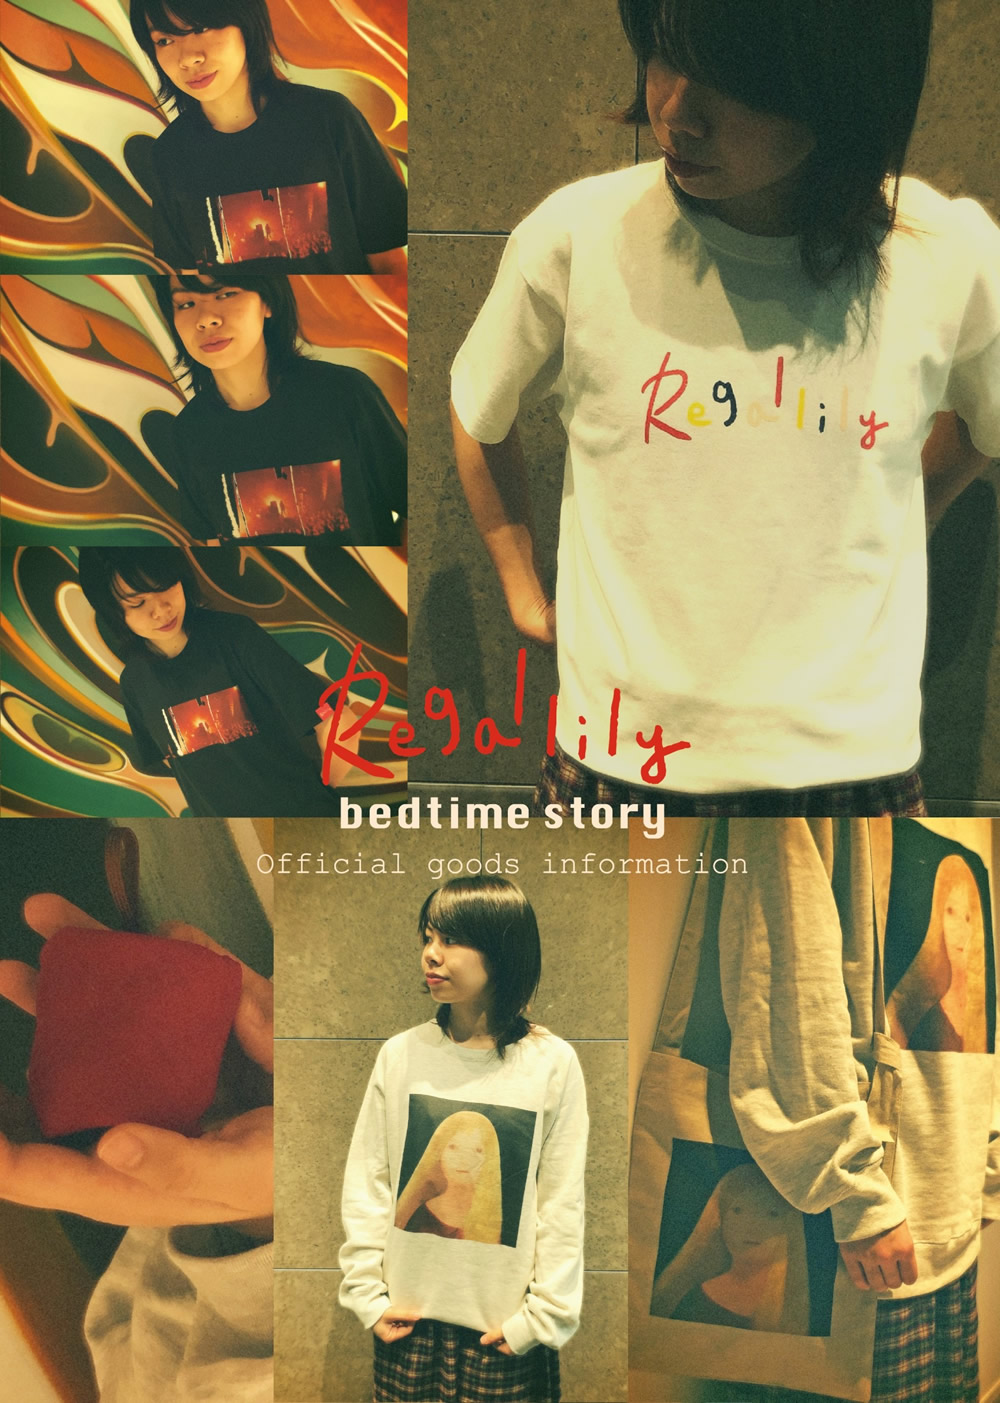 リーガルリリー 1st Full Album「bedtime story」